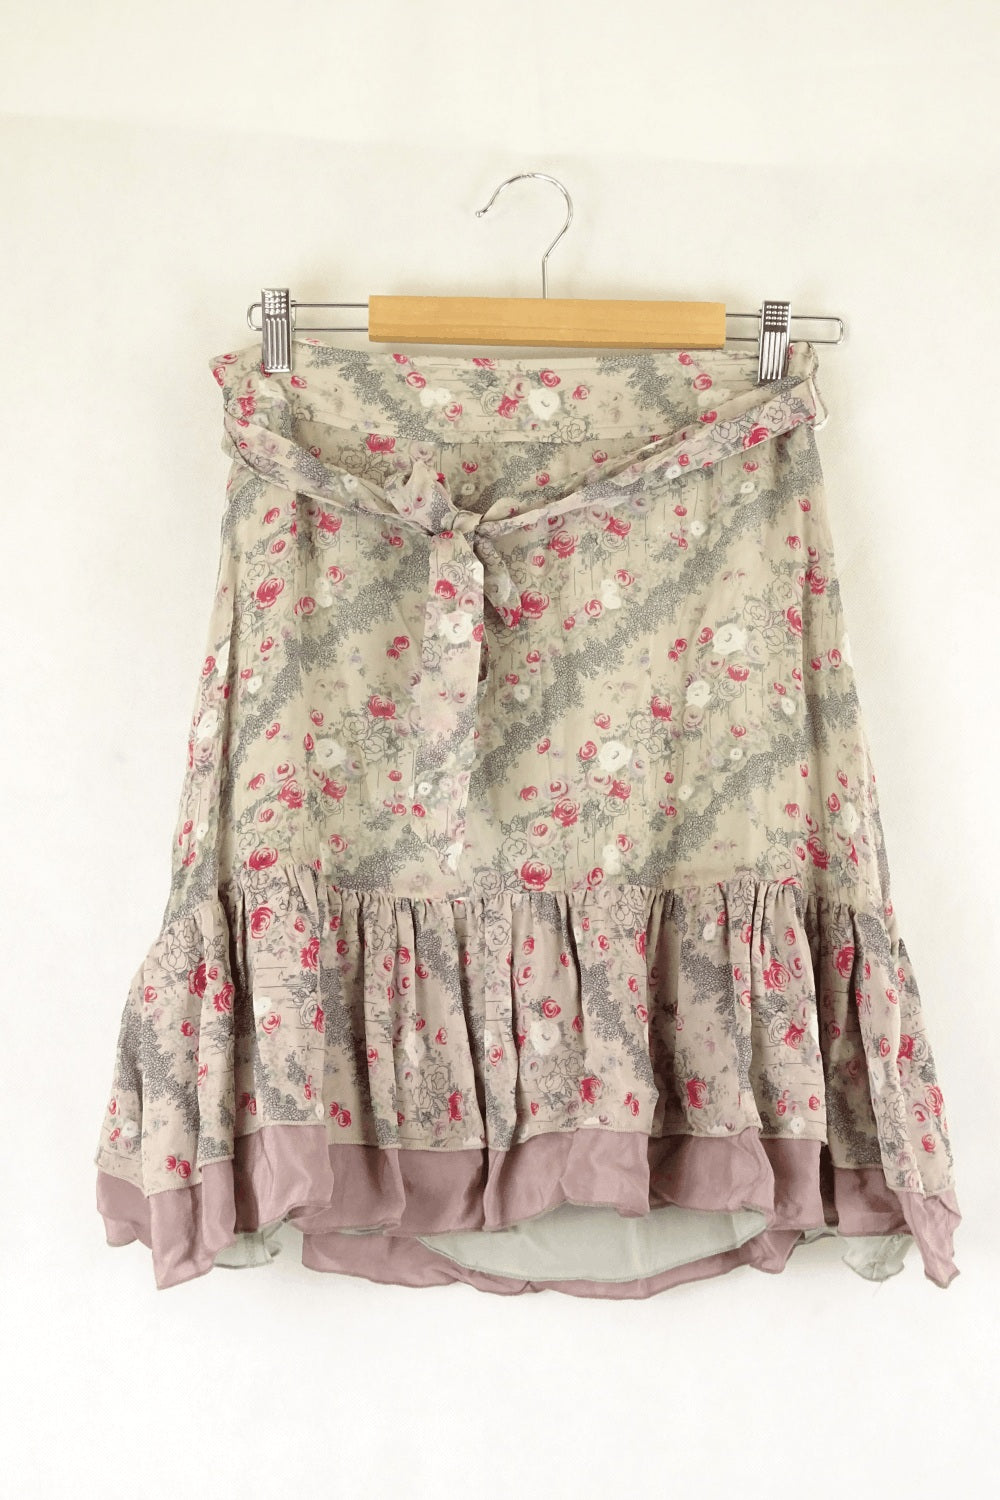 Alannah Hill Floral Skirt 10